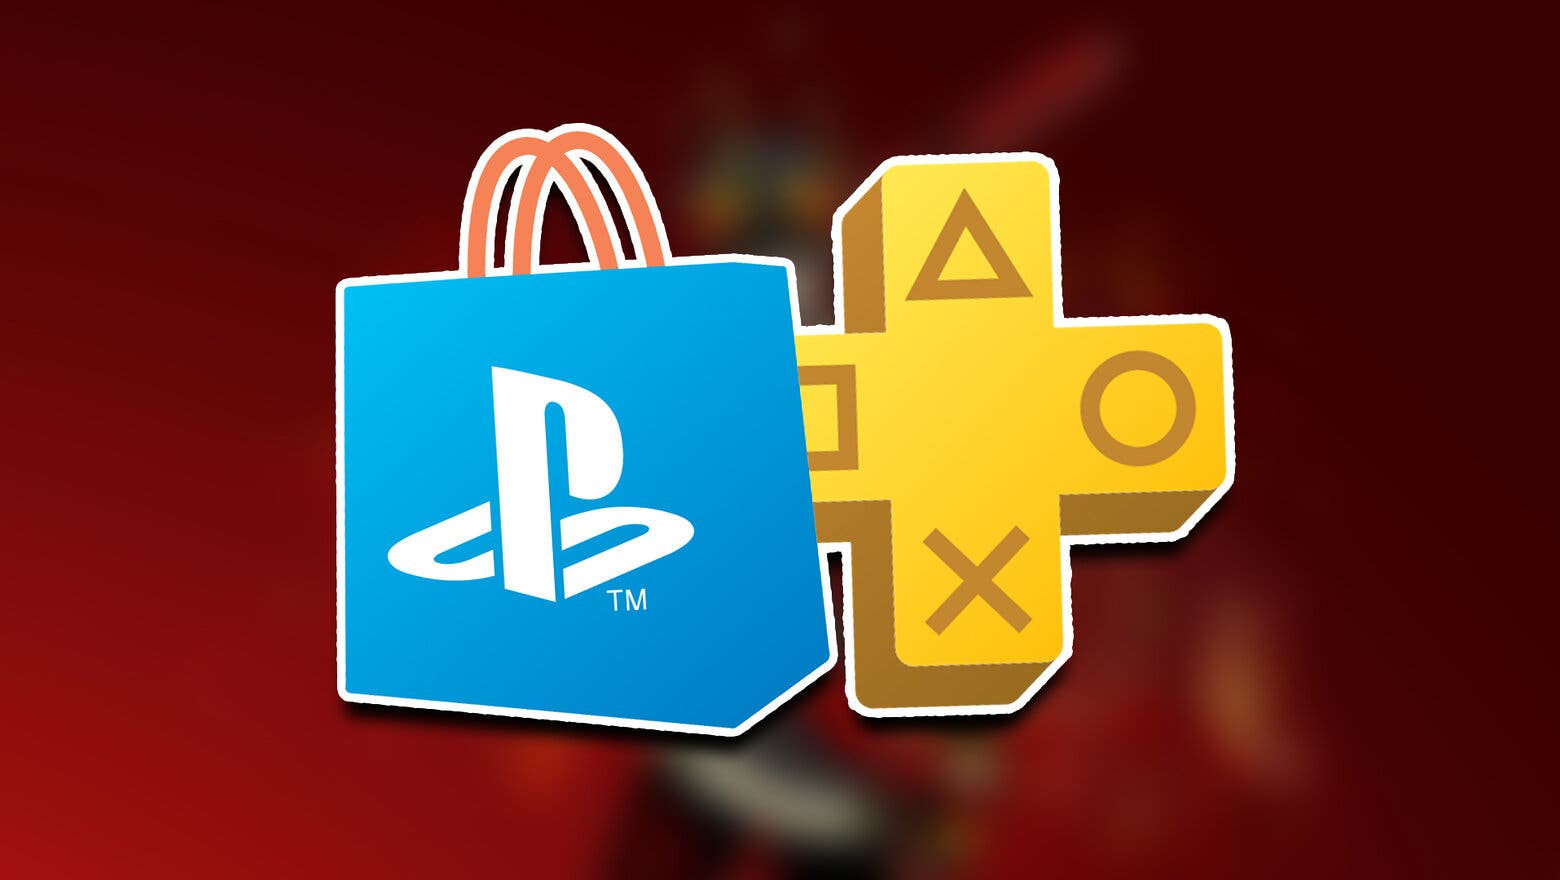 Los logos de PS Plus y PS Store entrecruzados